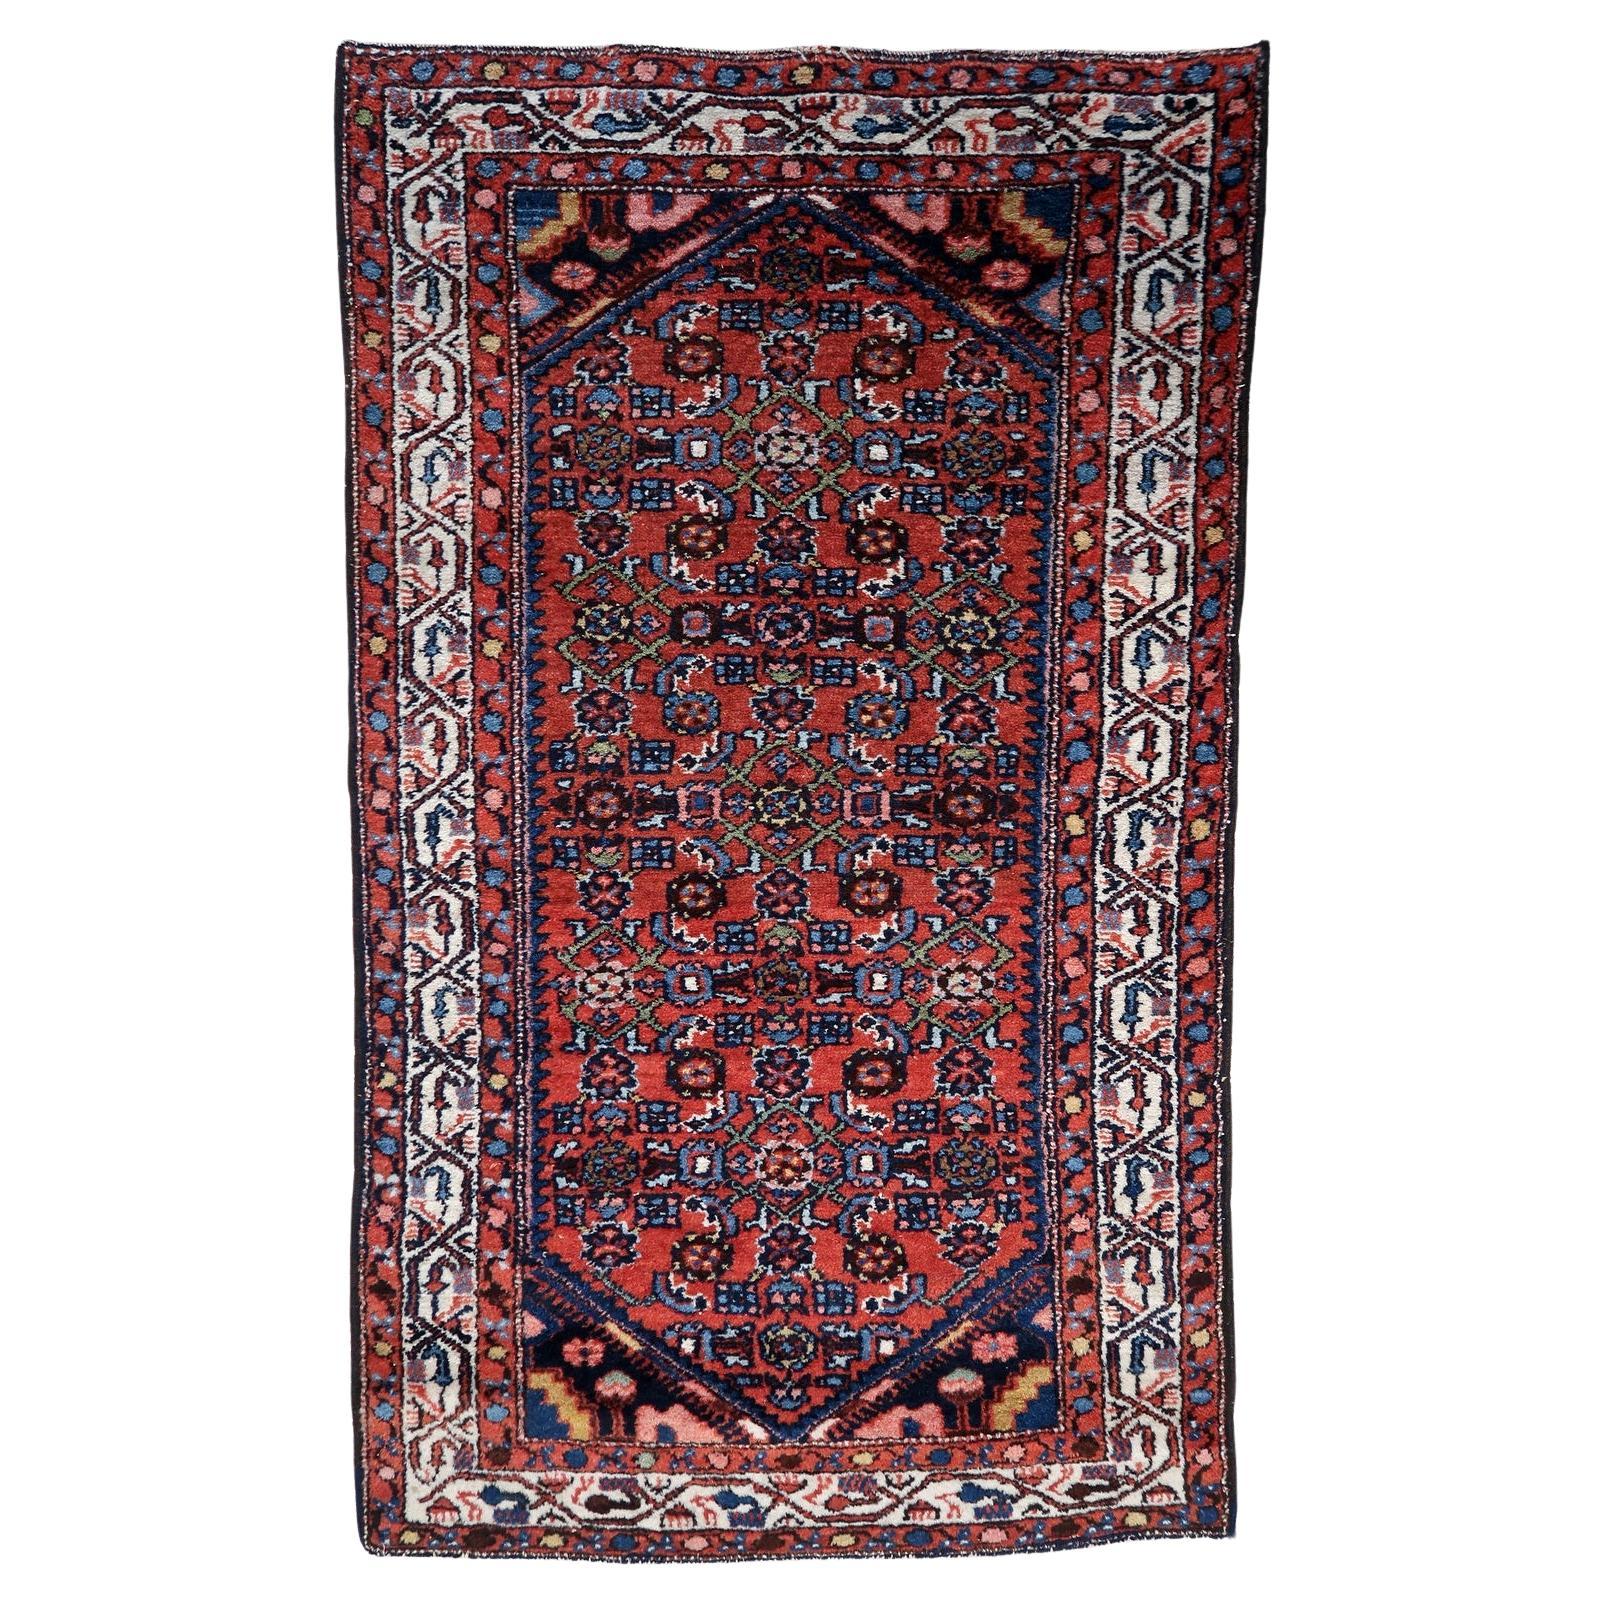 Handgefertigter Vintage-Hamadan-Teppich im persischen Stil 2.4' x 4.1', 1970er Jahre - 1C1122